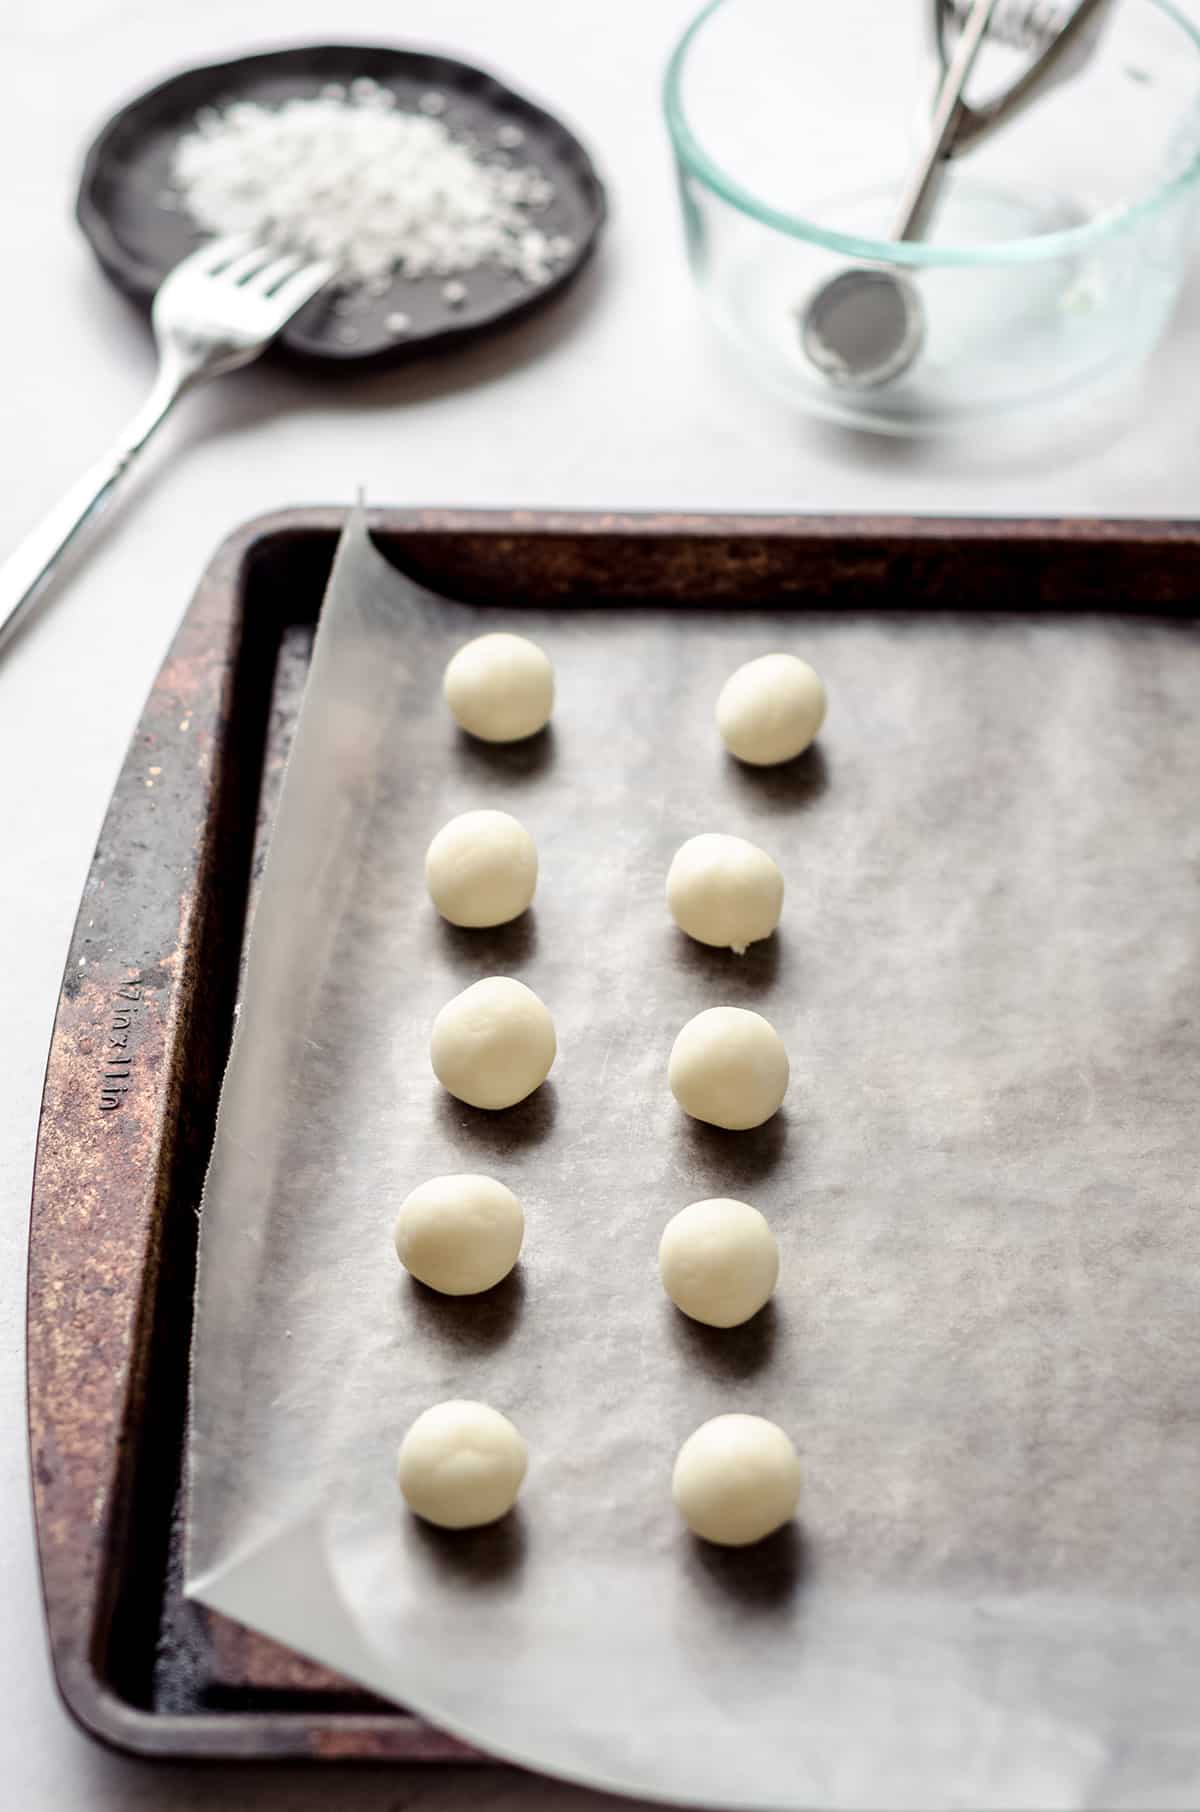 Small balls of cream cheese dough on a baking sheet.